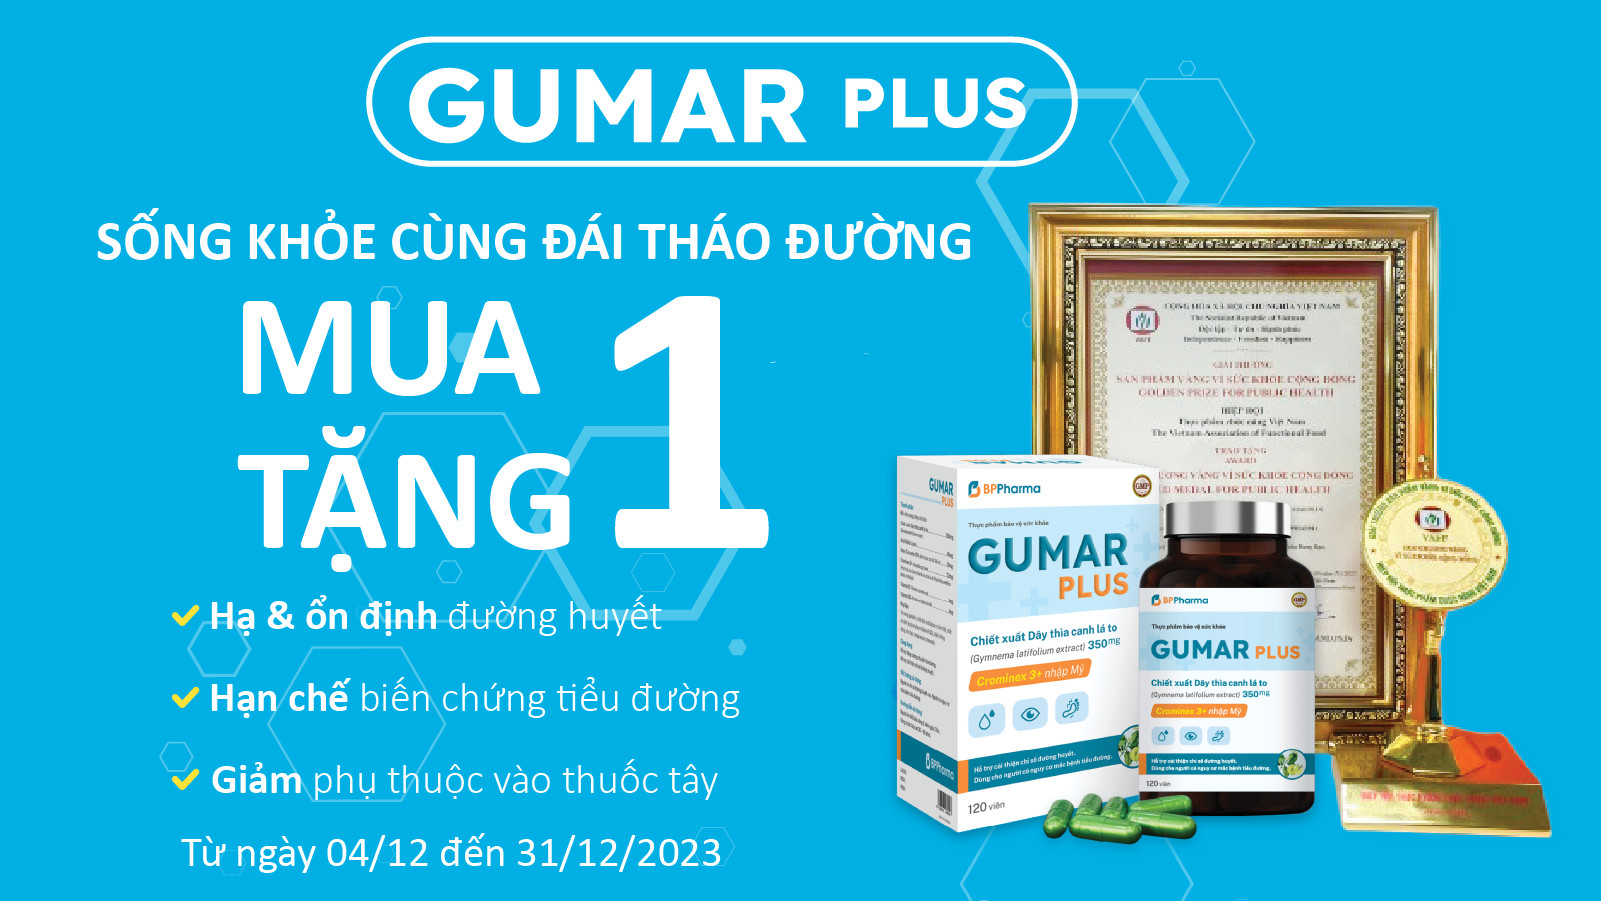 Ưu đãi cuối năm với Gumar Plus sản phẩm vàng vì sức khỏe cộng đồng dành cho bệnh nhân tiểu đường